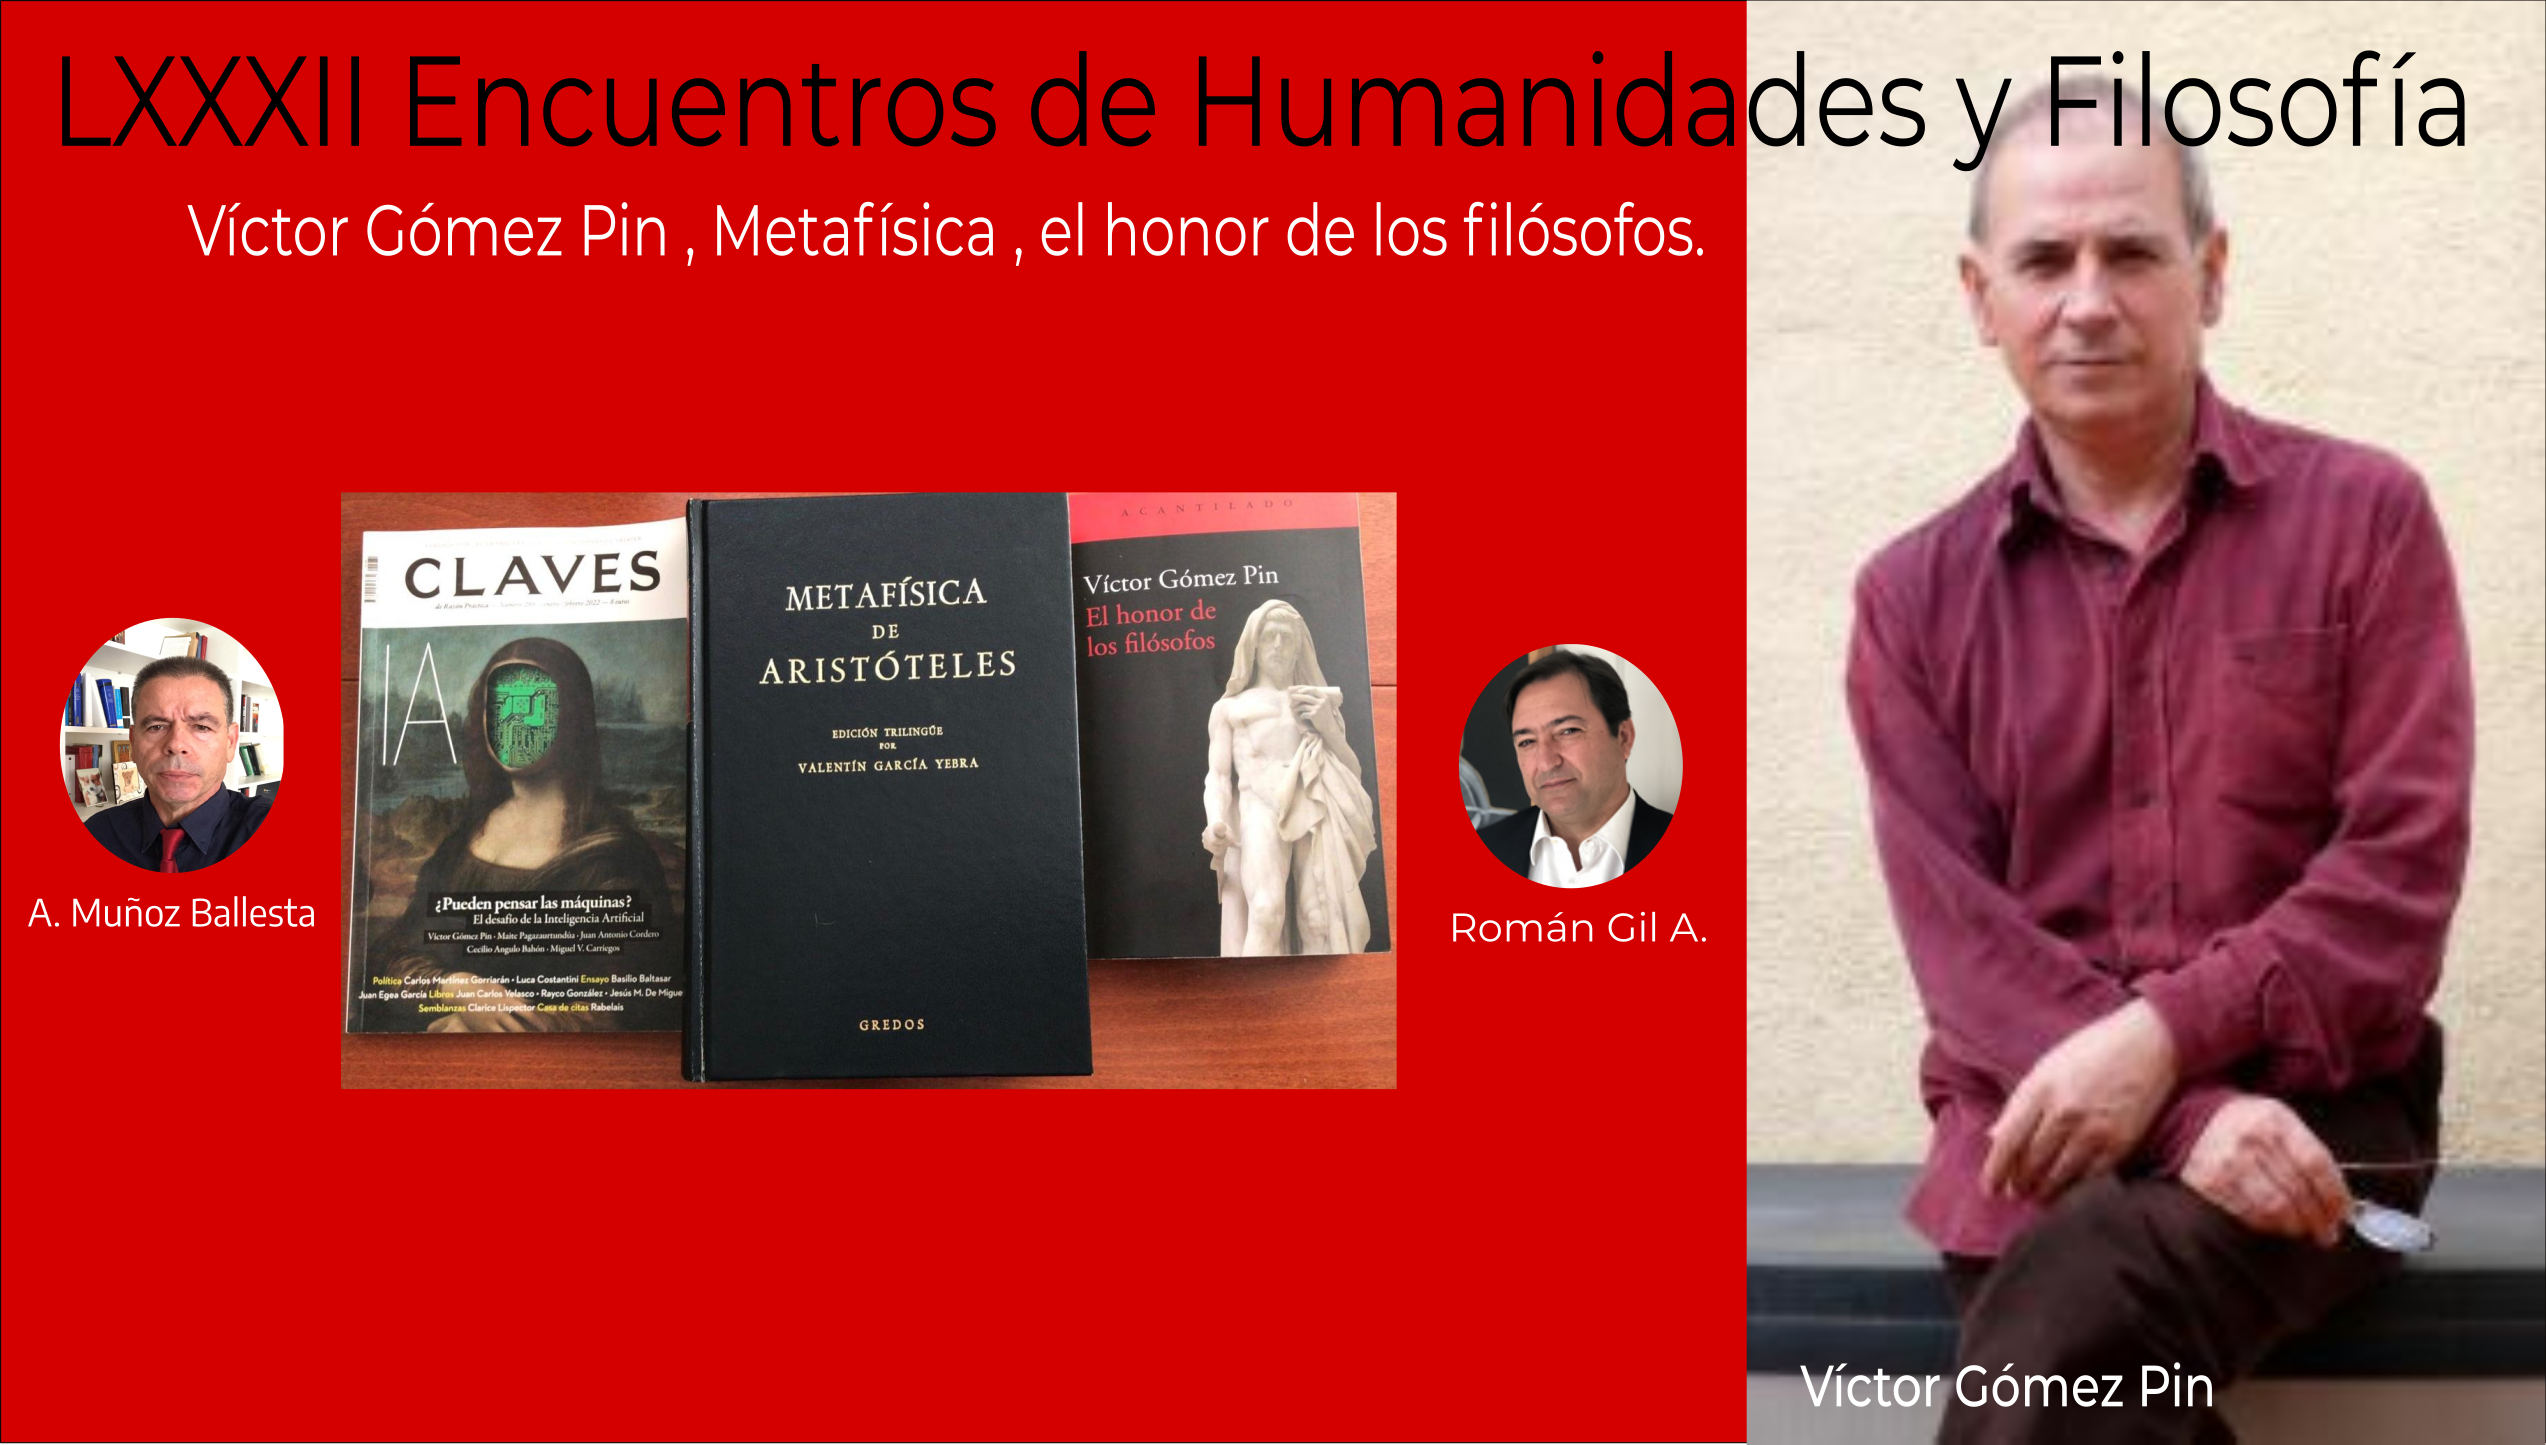 LXXXII Encuentros de Humanidades y Filosofía: Víctor Gómez Pin , Metafísica , el honor de los filósofos.